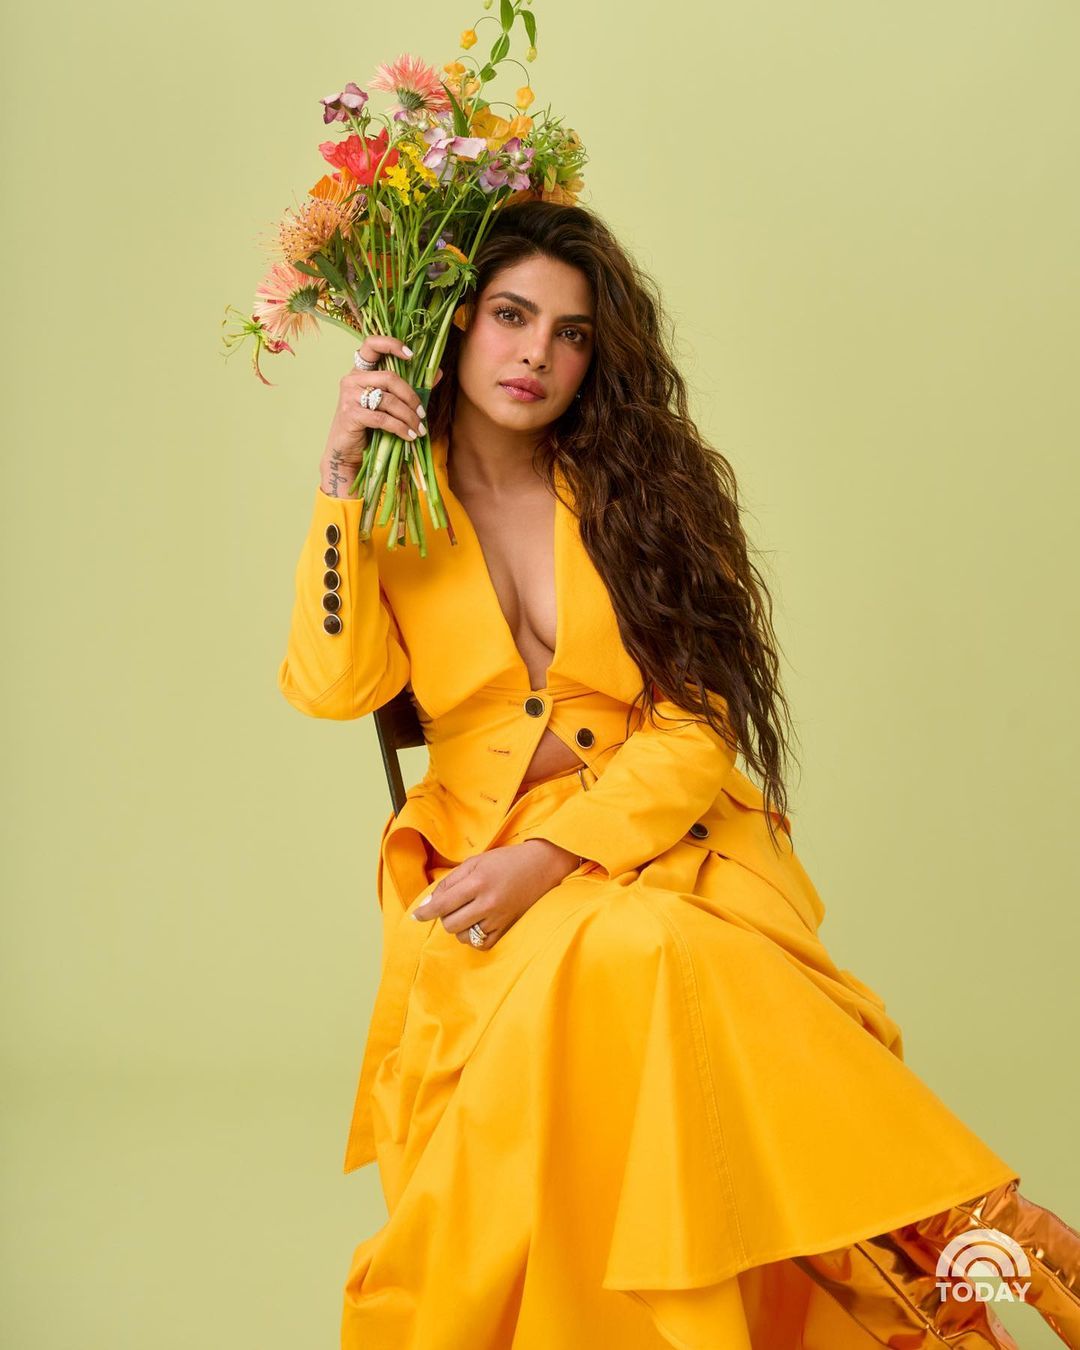 Priyanka Chopra beautiful look in yellow outfit (1)